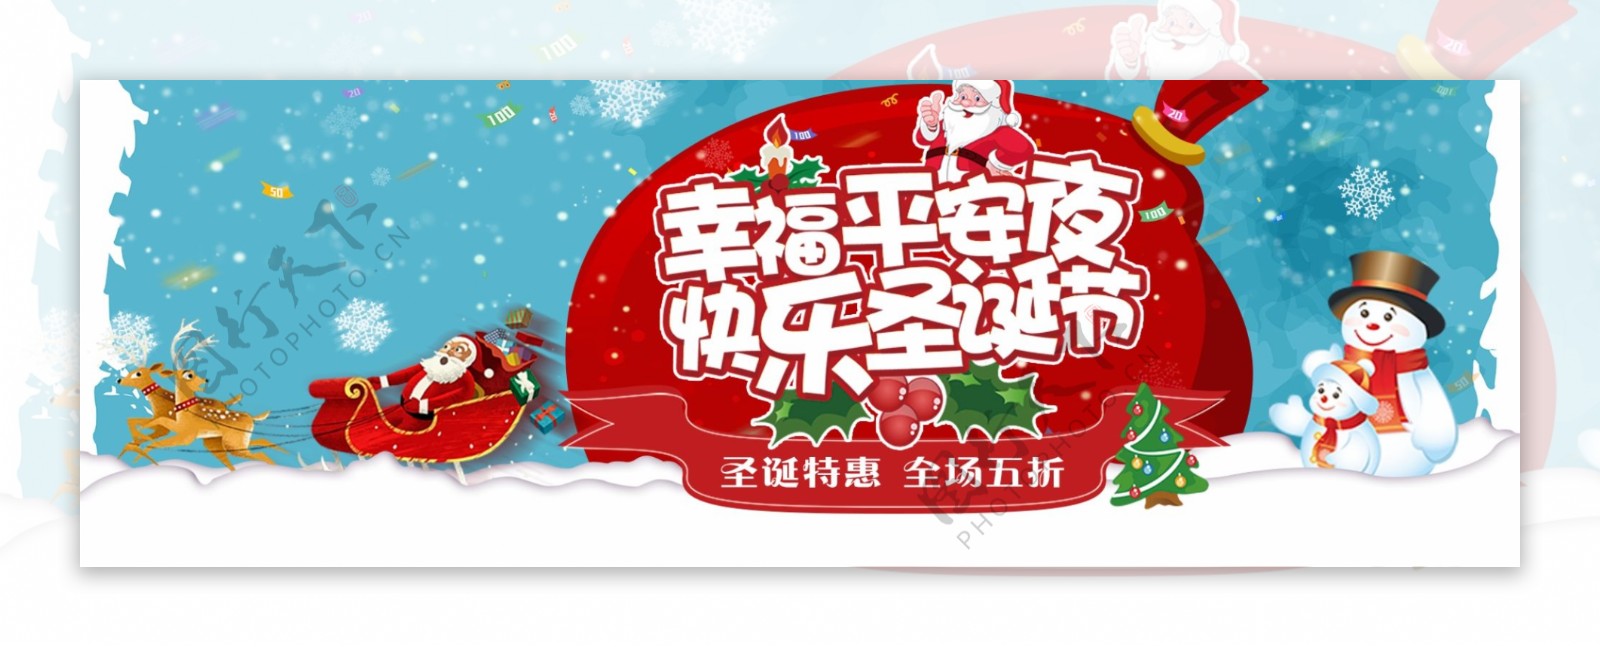 蓝红色简约圣诞节快乐电商banner淘宝